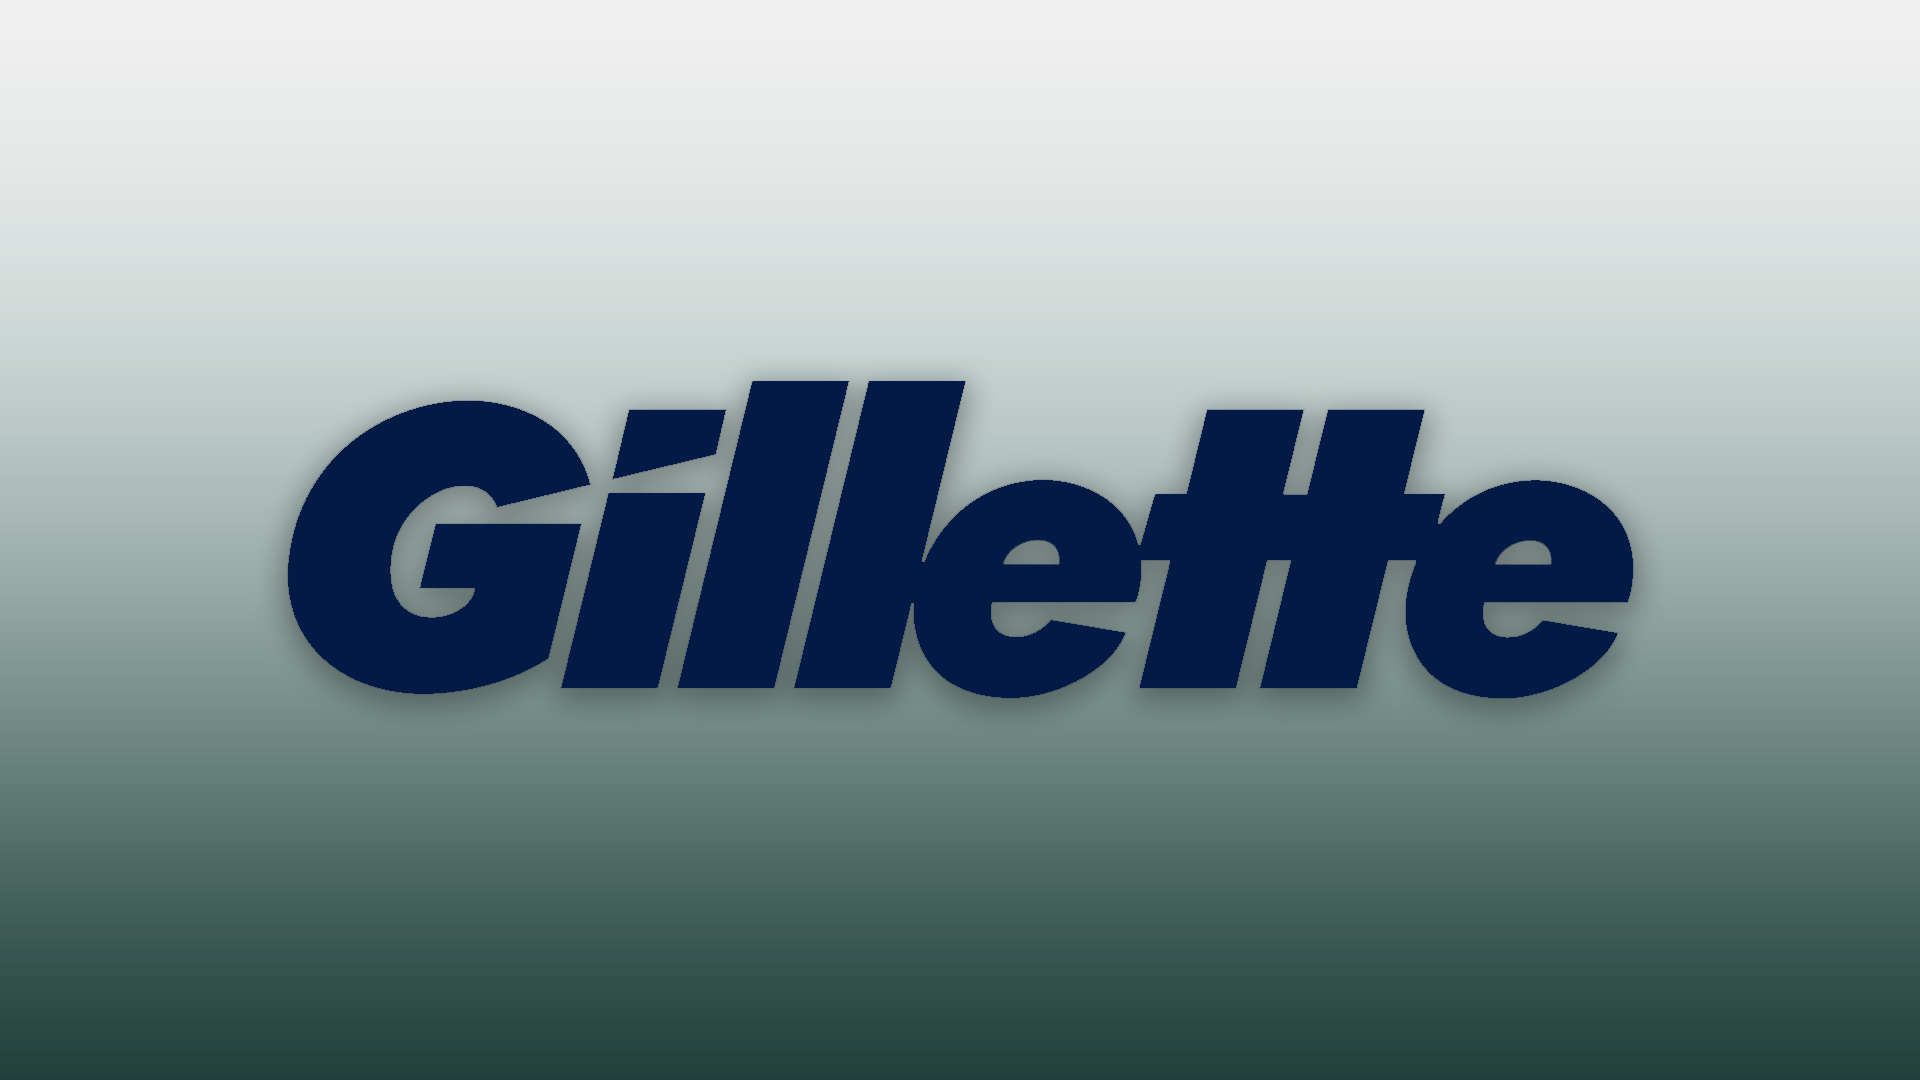 Gillette Marketing | The Brand Hopper